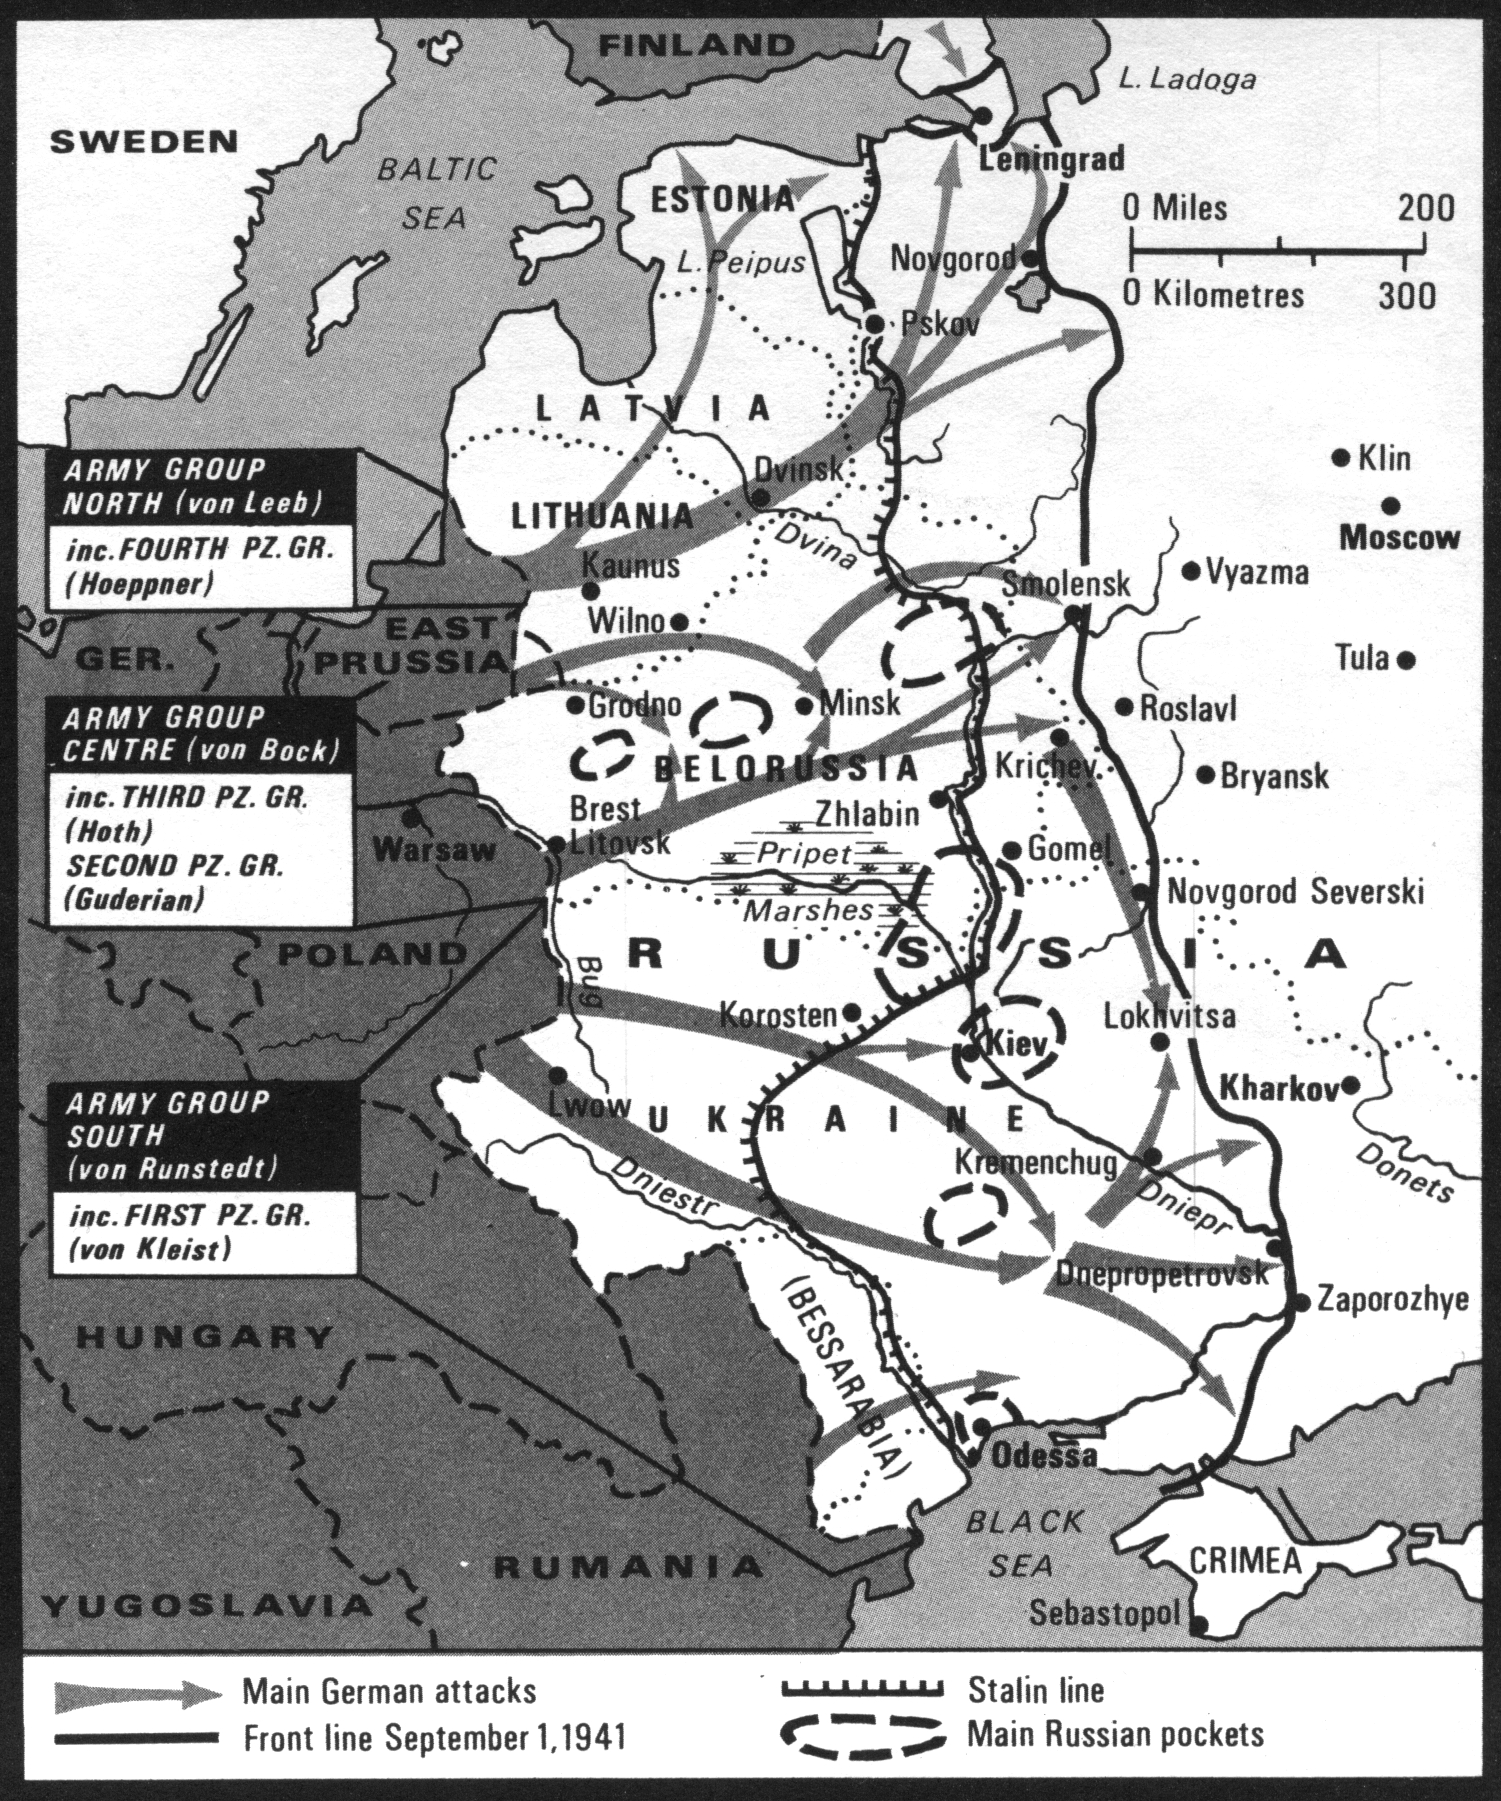 Планы второй мировой войны в европе. Карта 2 мировой войны план Барбаросса. Операция Барбаросса лето 1941. Карта второй мировой войны план Барбаросса.